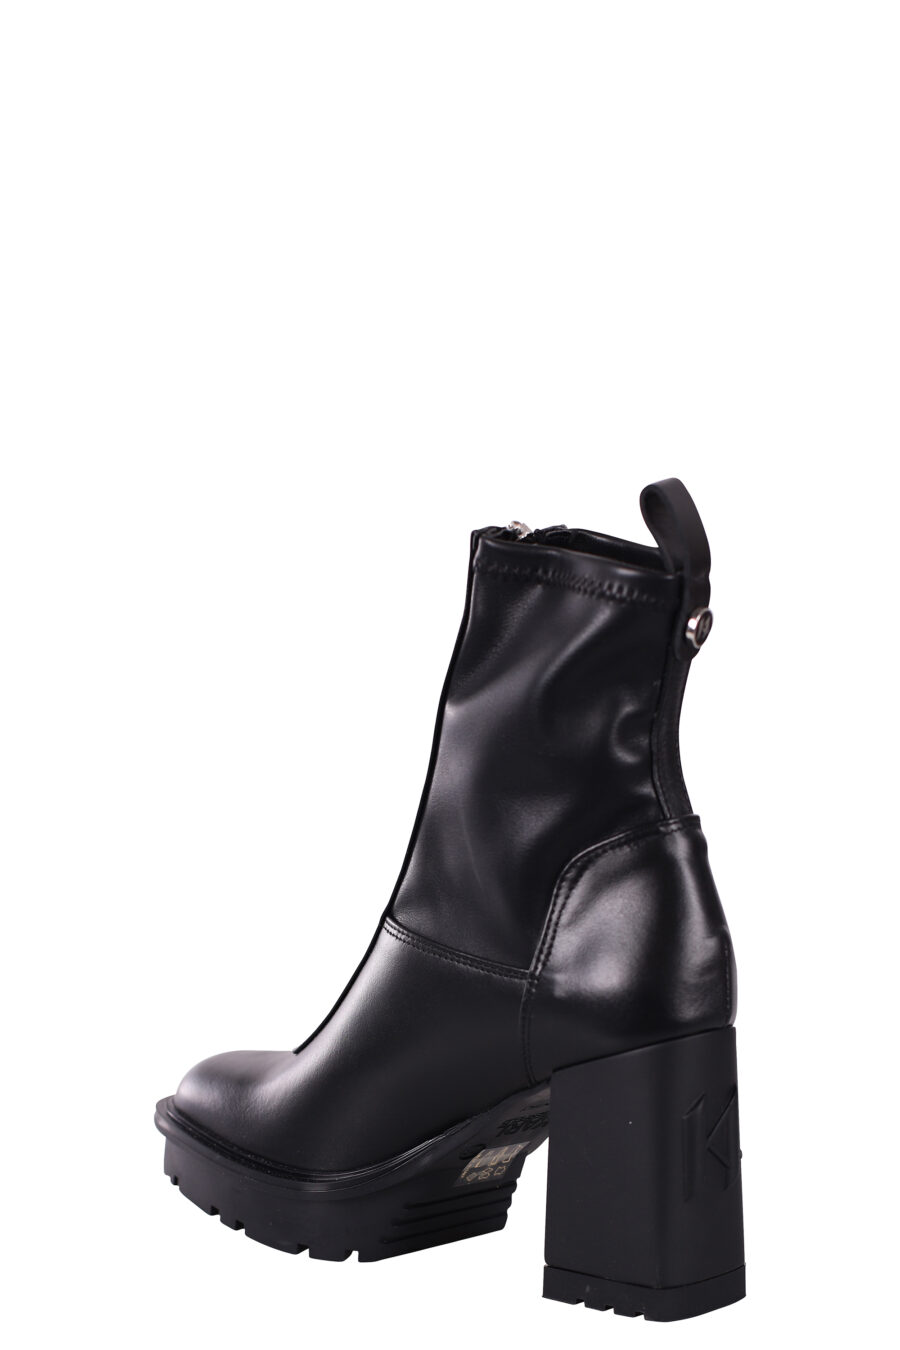 Botines negros estilo calcetin con tacon y plataforma - IMG 5812